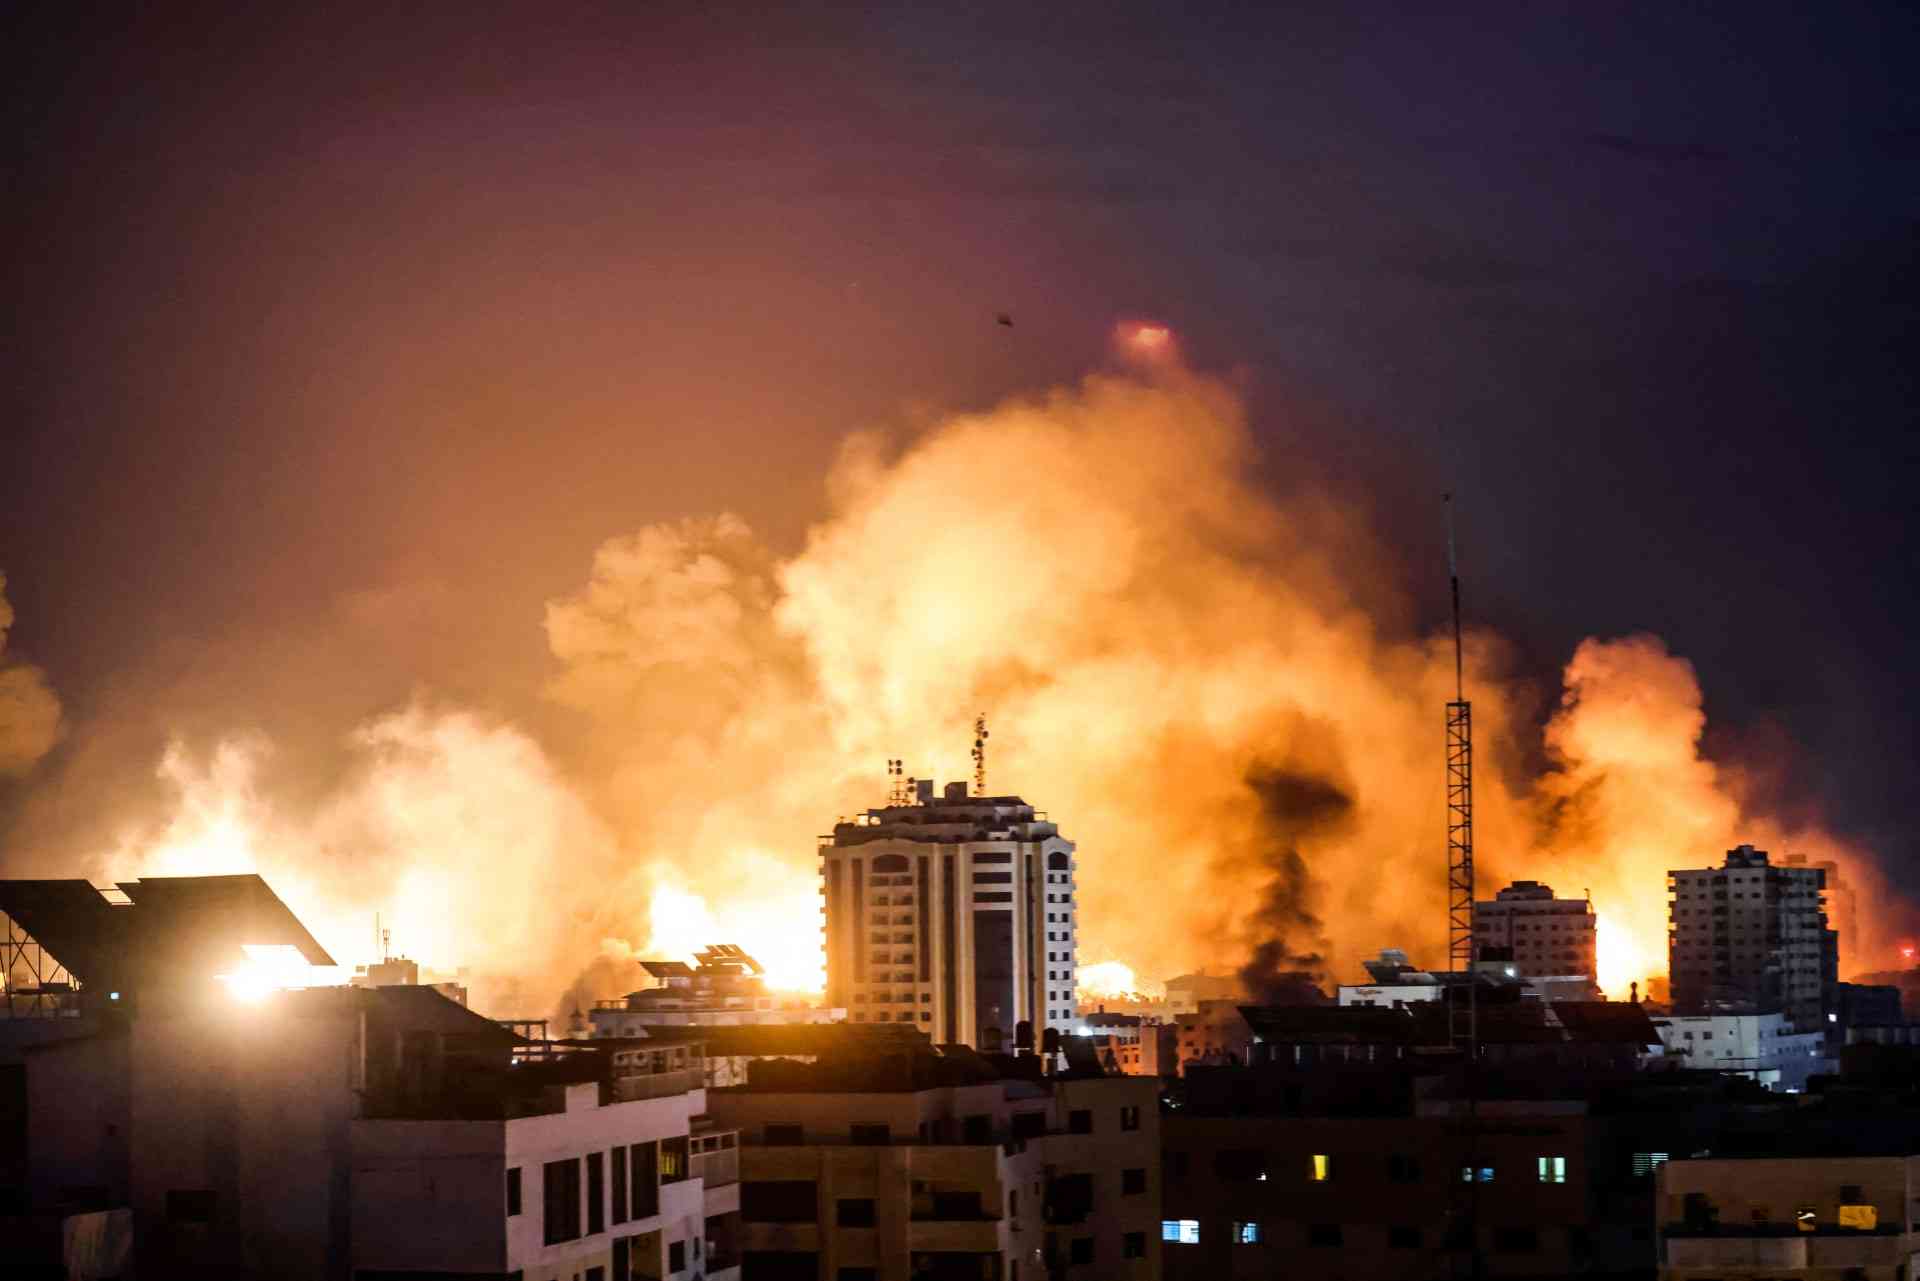 وضع كارثي في غزة